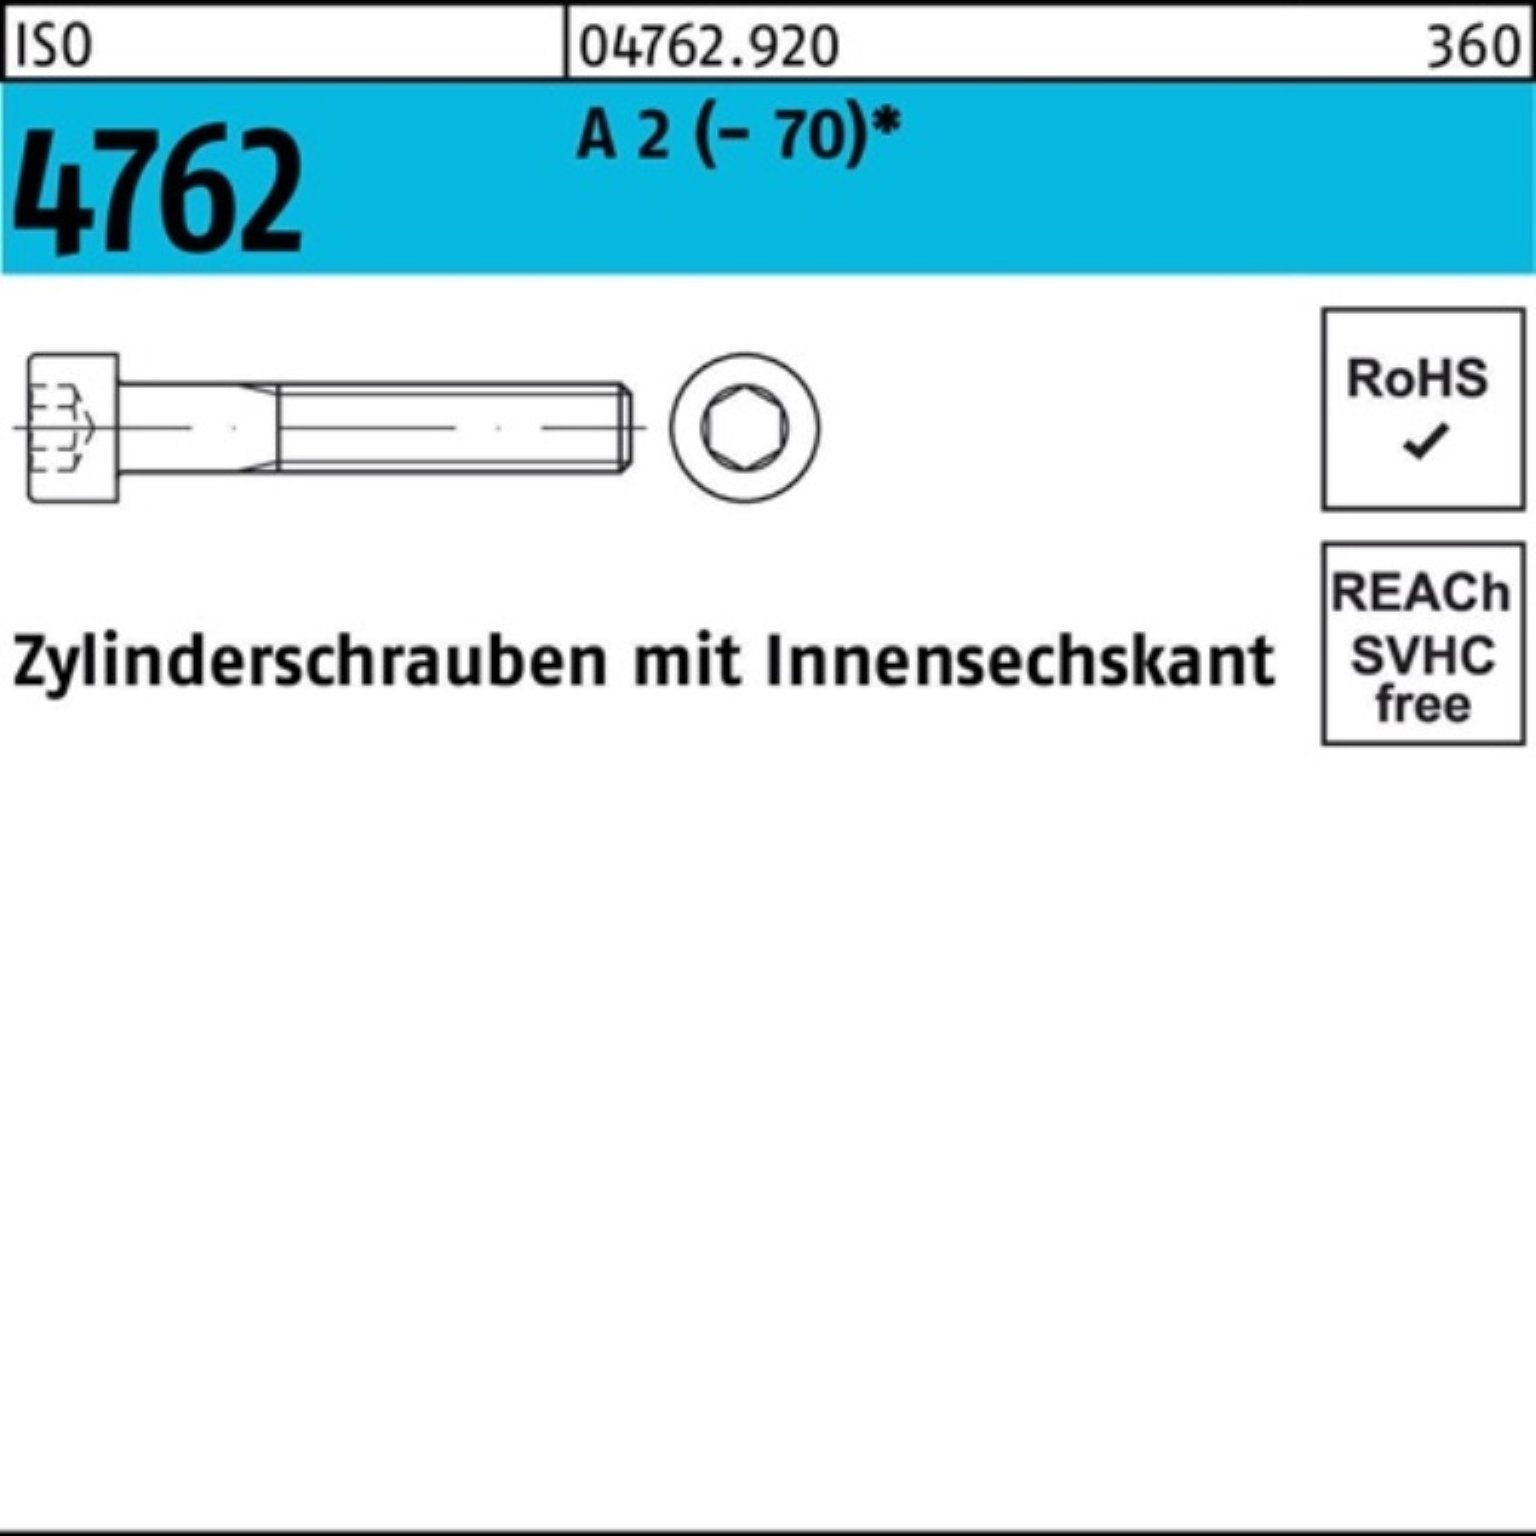 Pack Zylinderschraube 4762 (70) M12x Zylinderschraube 2 Innen-6kt A ISO 100er Reyher 90 100